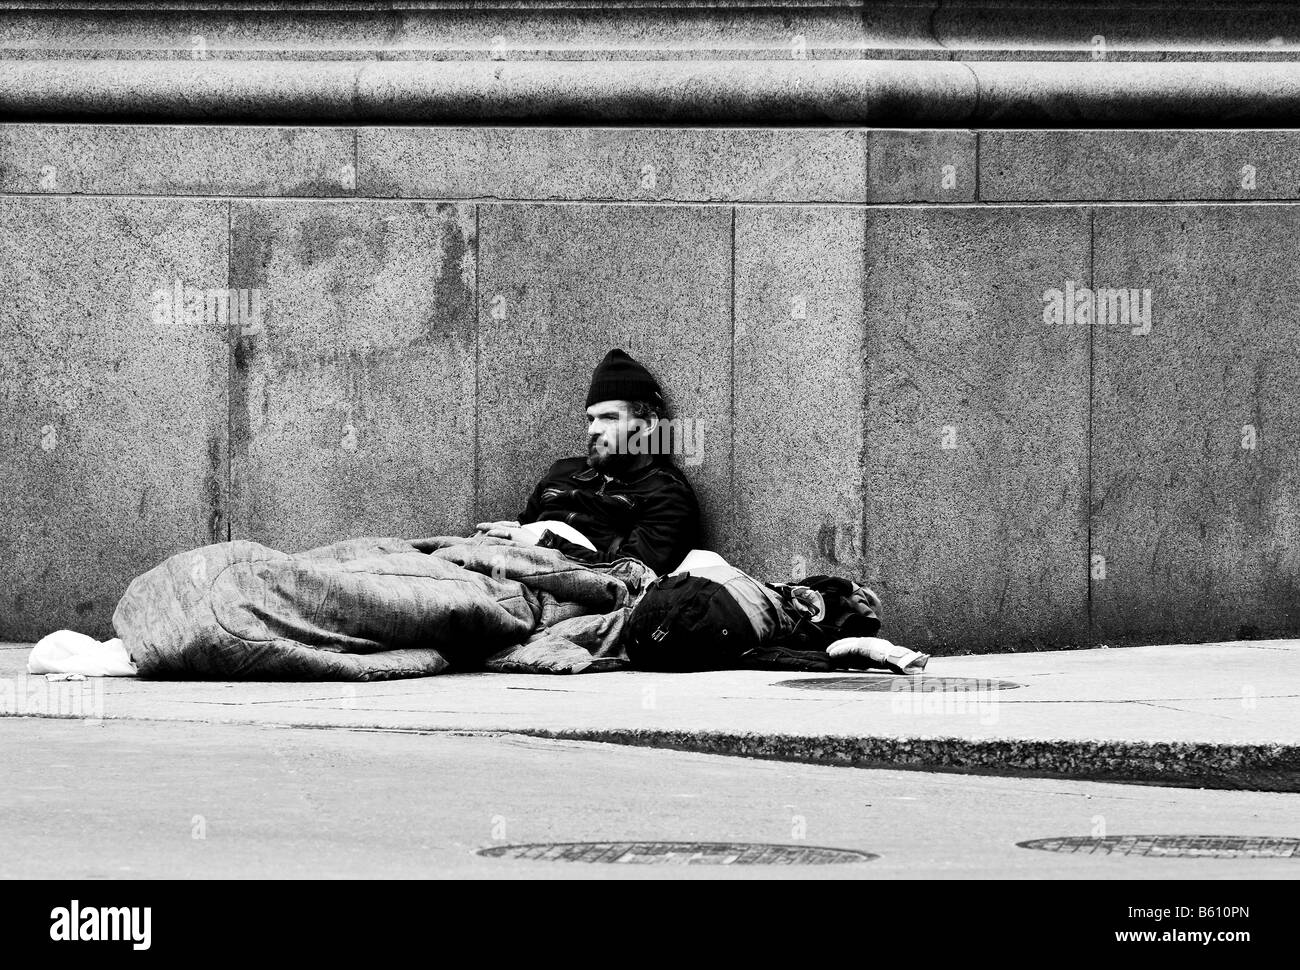 Ein schwarz-weiß Foto ein Obdachloser, ein Penner, ein Bettler, sitzen auf der Straße Ecke einer Straße in einer Großstadt. Stockfoto